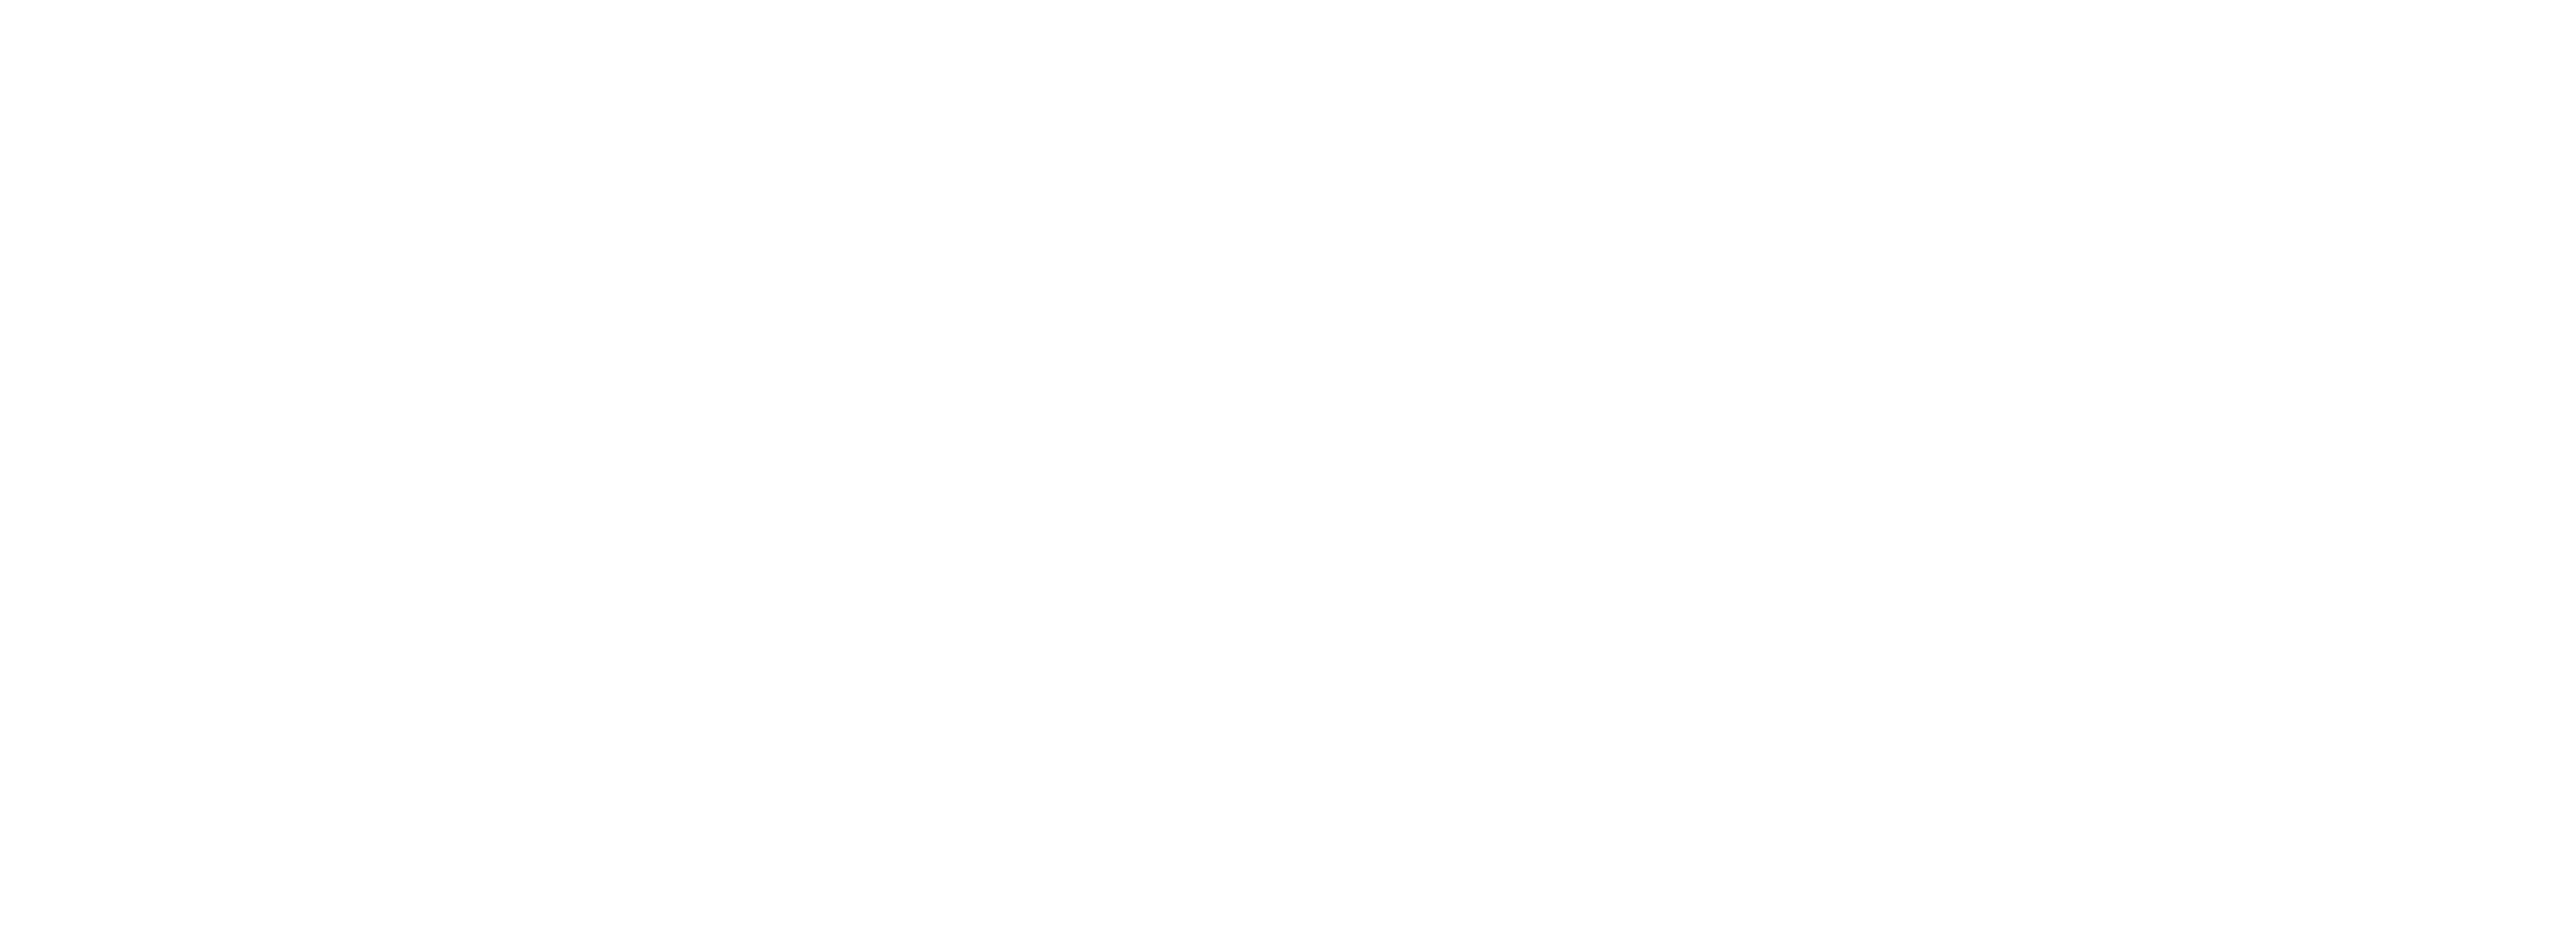 Vilhelm Mobergsgymnasiet